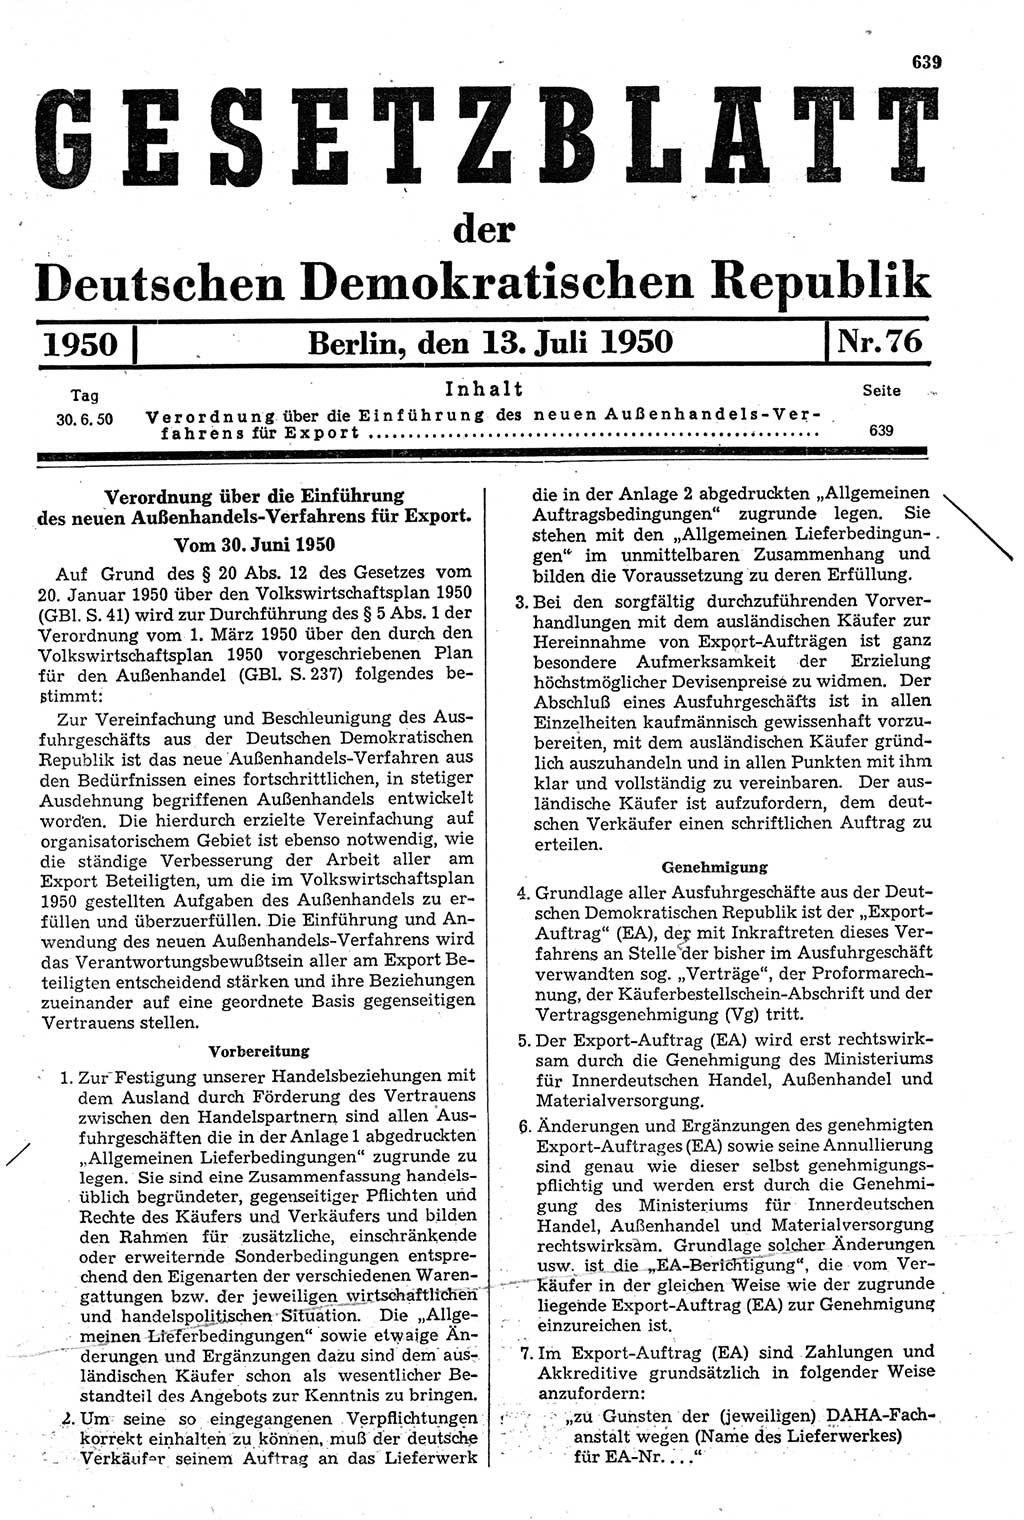 Gesetzblatt (GBl.) der Deutschen Demokratischen Republik (DDR) 1950, Seite 639 (GBl. DDR 1950, S. 639)